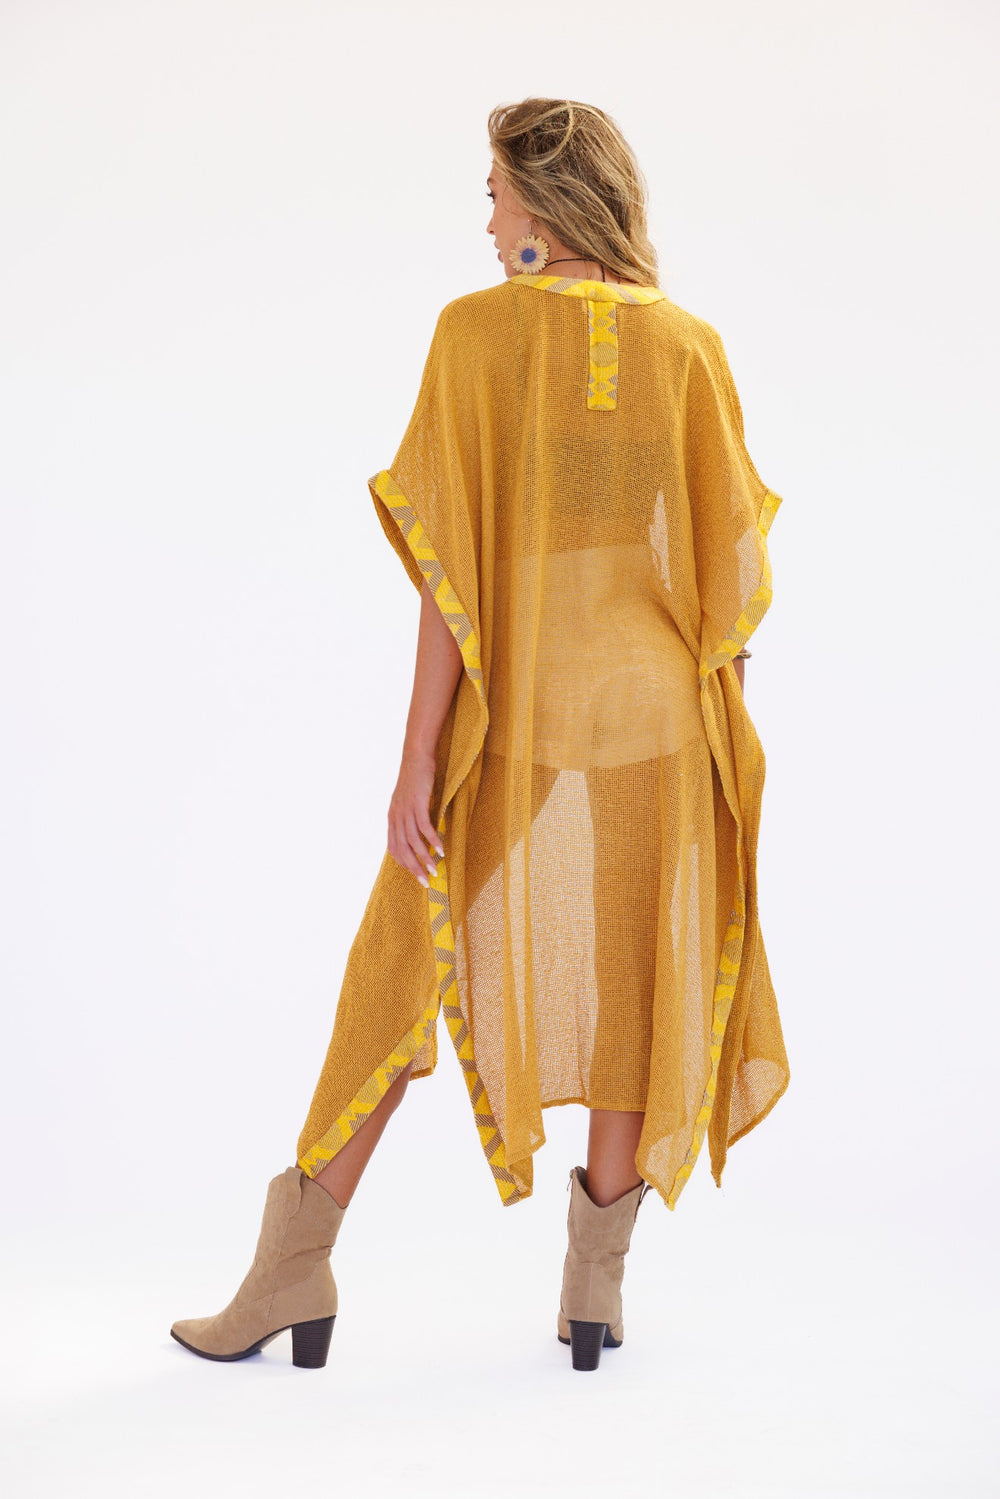 קימונו רשת צהוב של אלעדן עם בורדר בהדפס משולשים גאומטרי שבטי בצבע בז' וצהוב